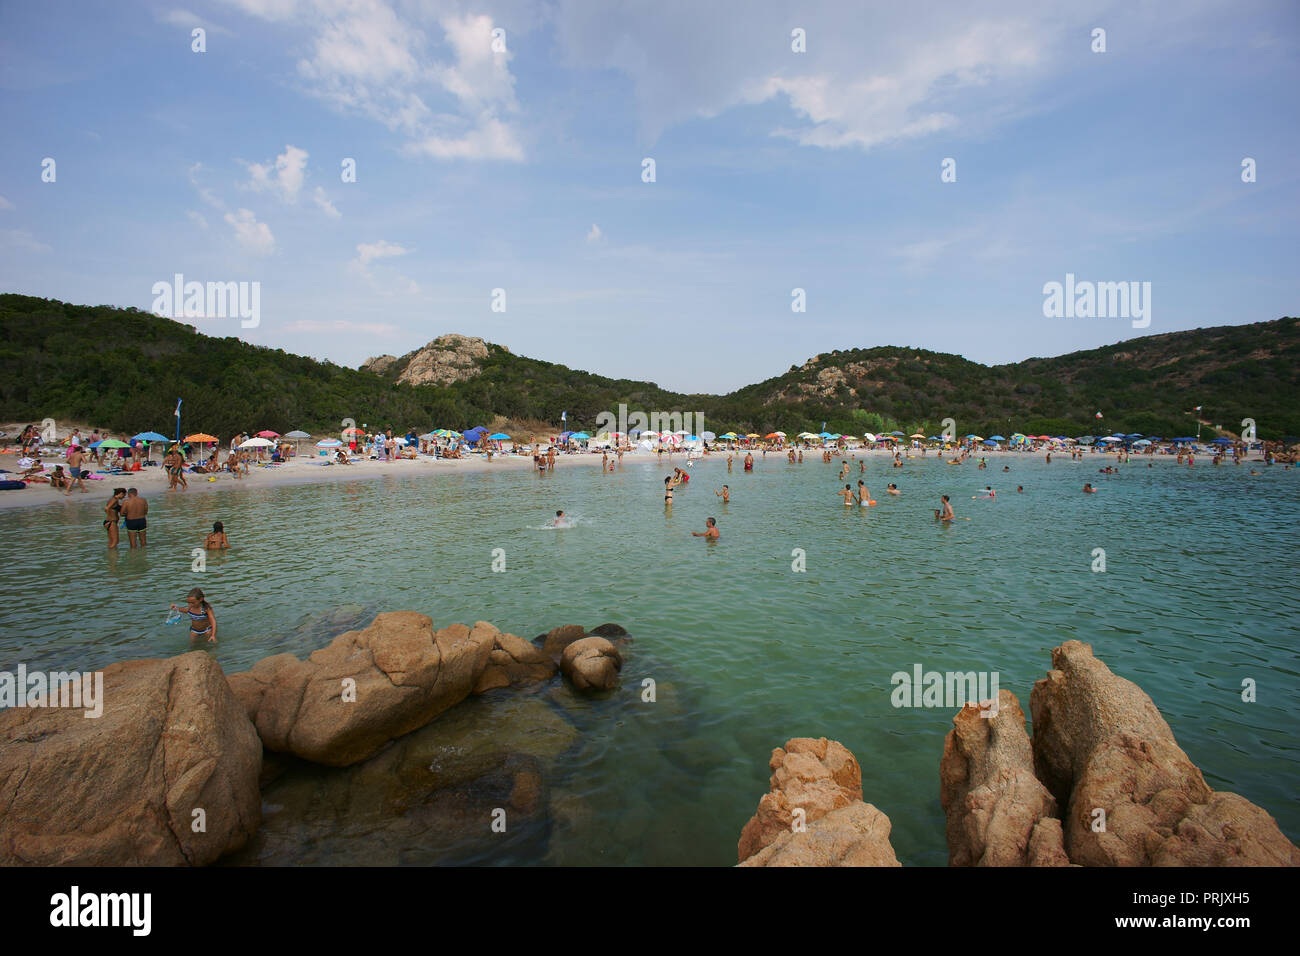 Prince’s Beach, costa smeralda, Sardinia, Italy Stock Photo